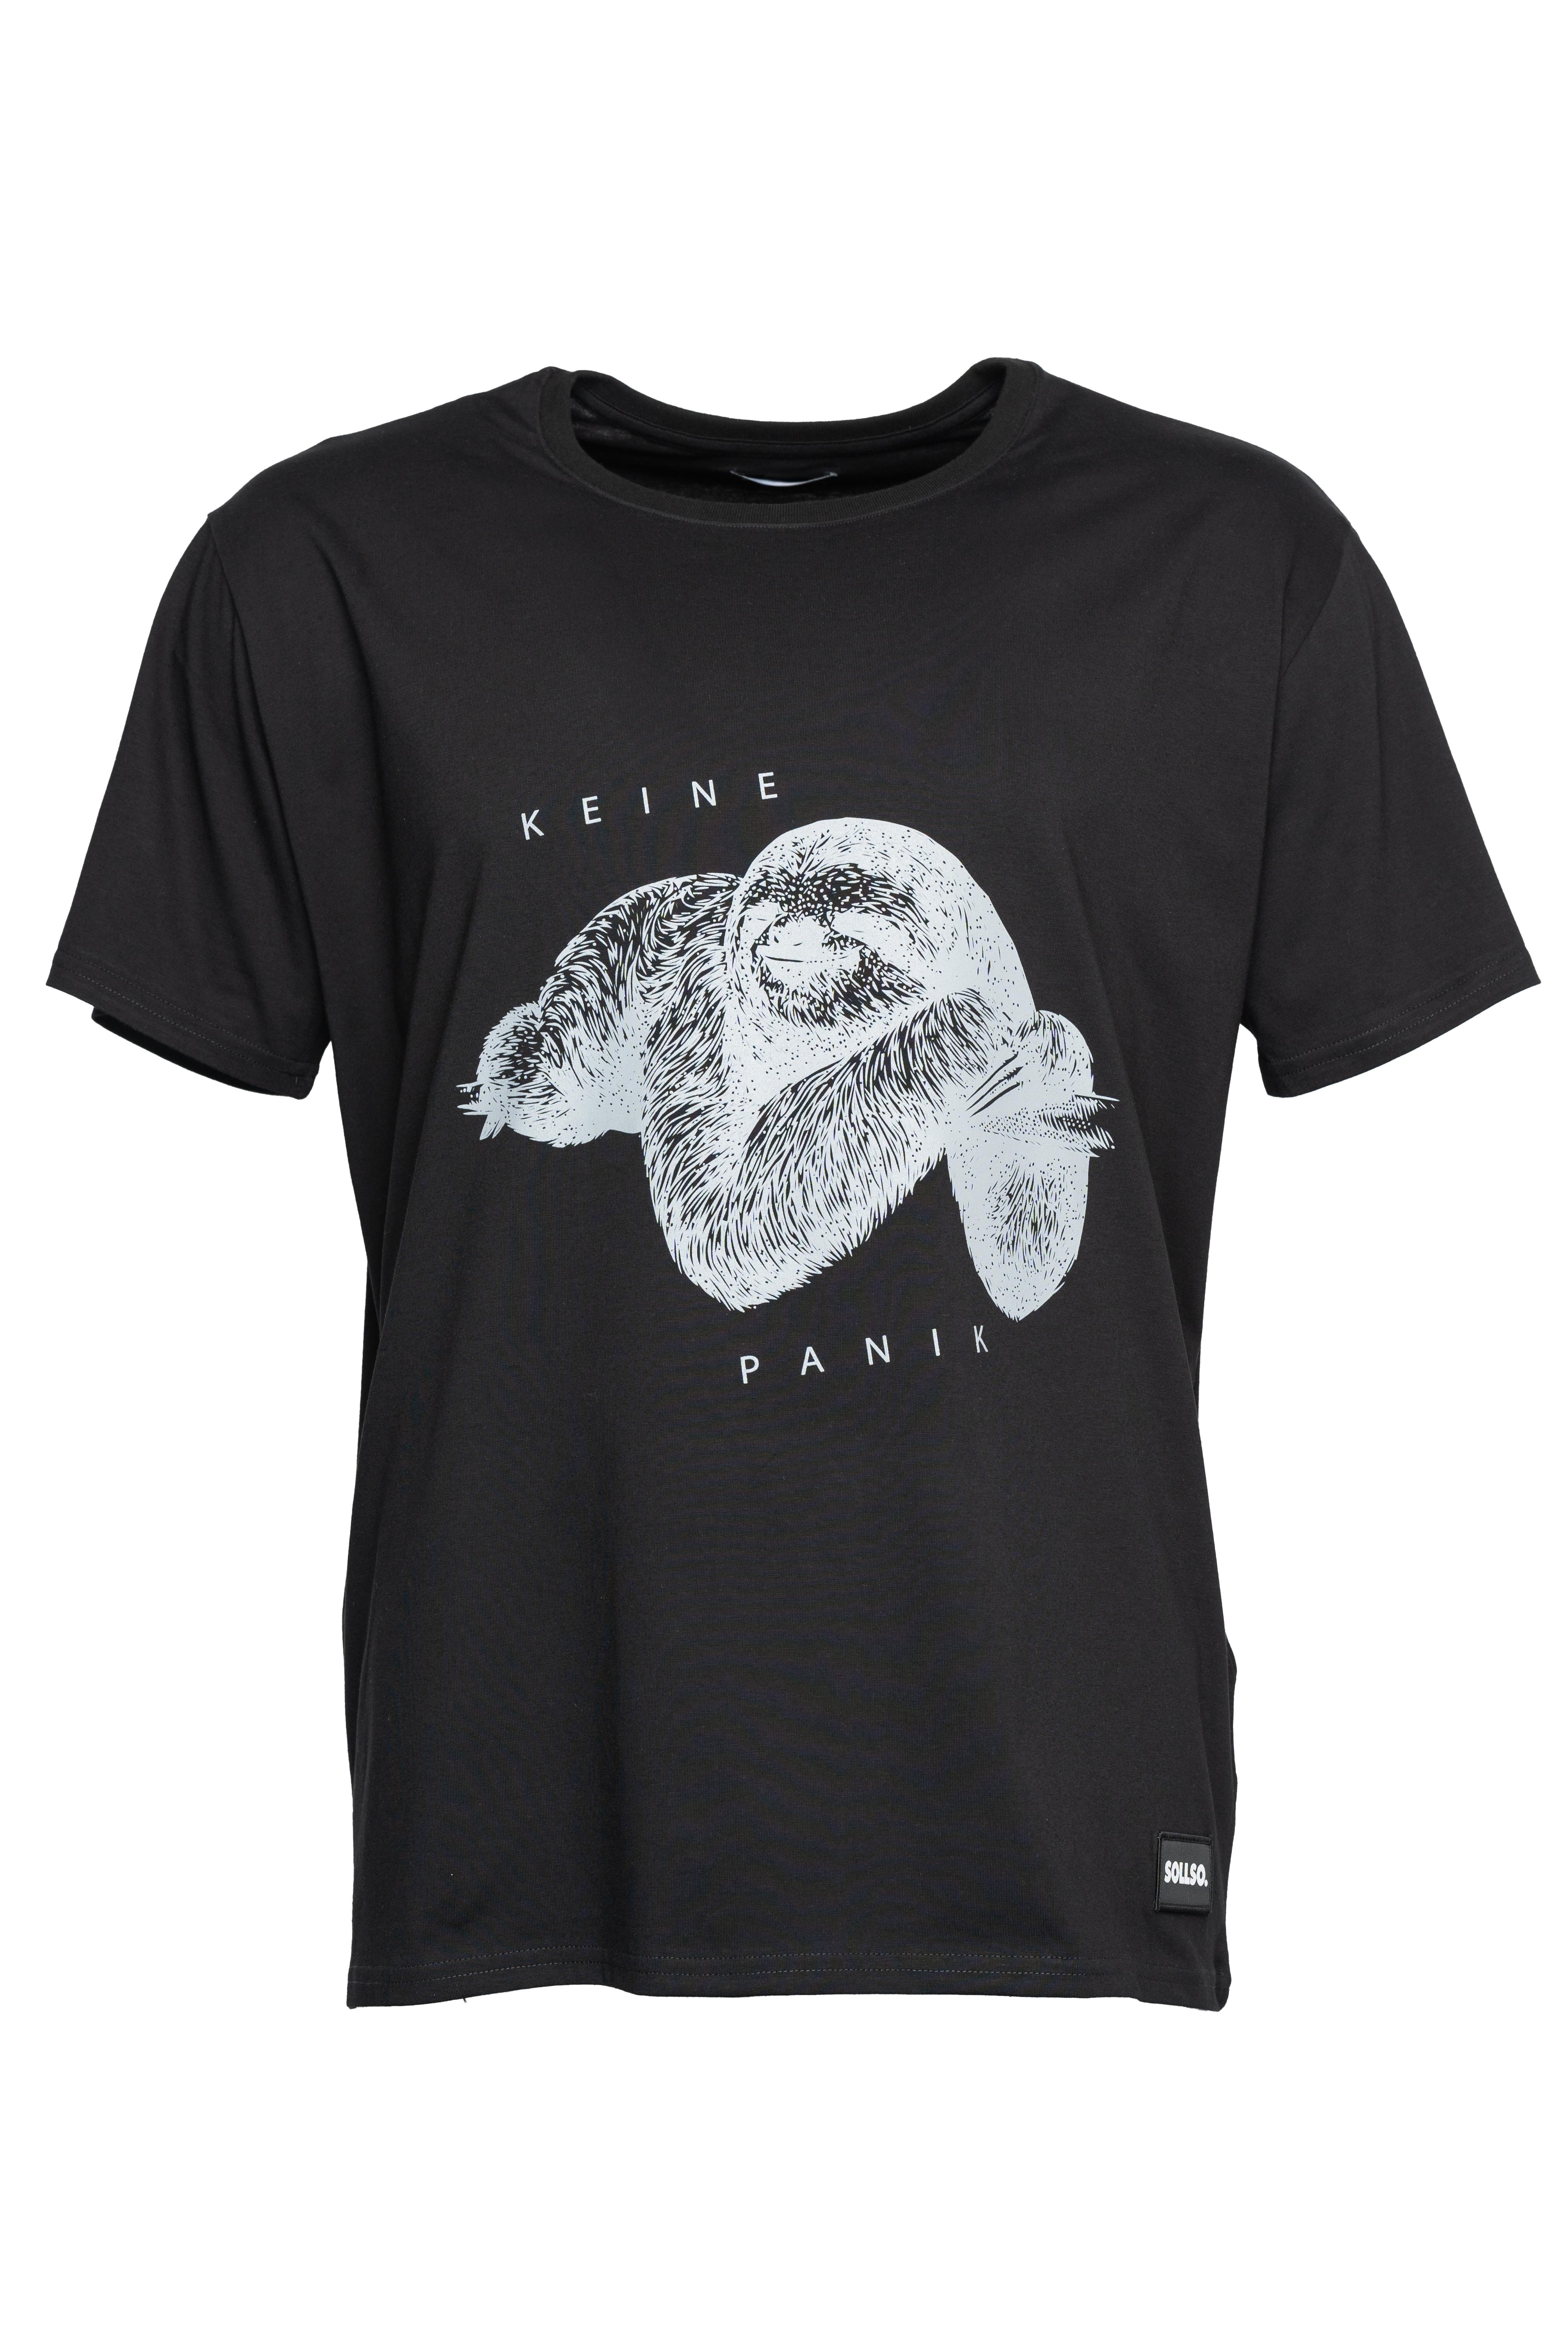 SOLLSO. T-Shirt "Keine Panik Faultier", Farbe Dark Black, Größe M